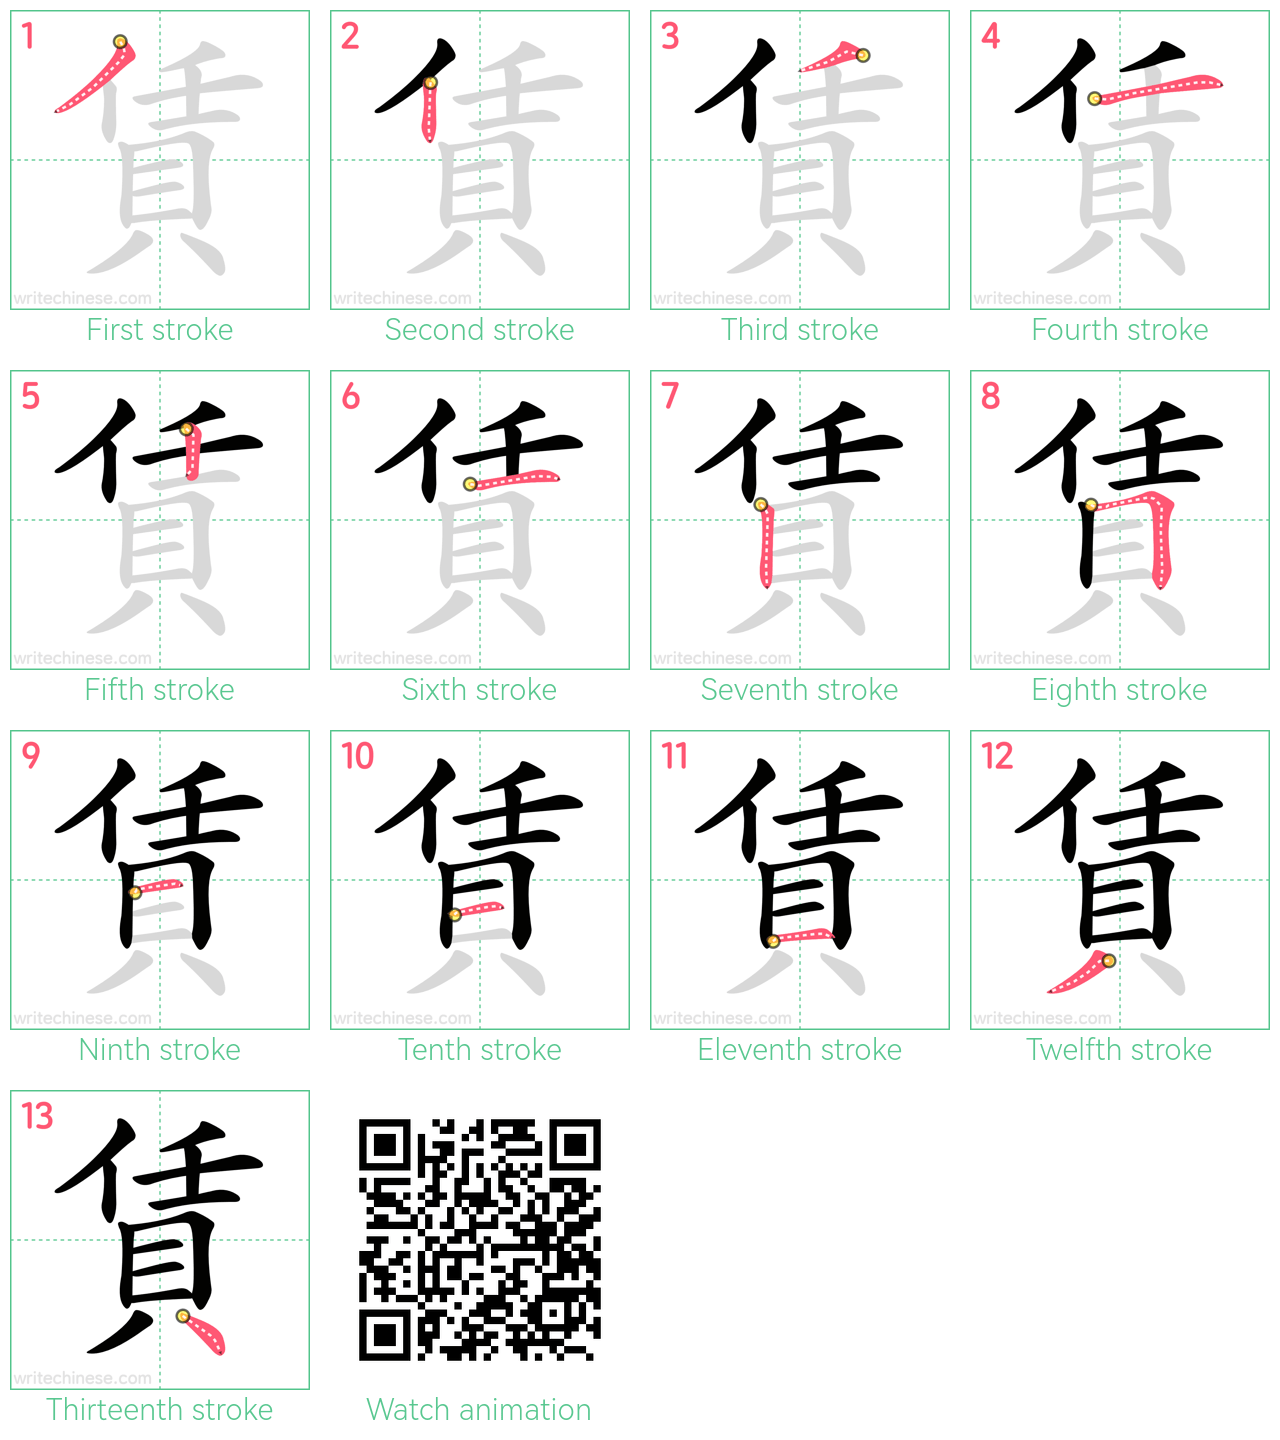 賃 step-by-step stroke order diagrams